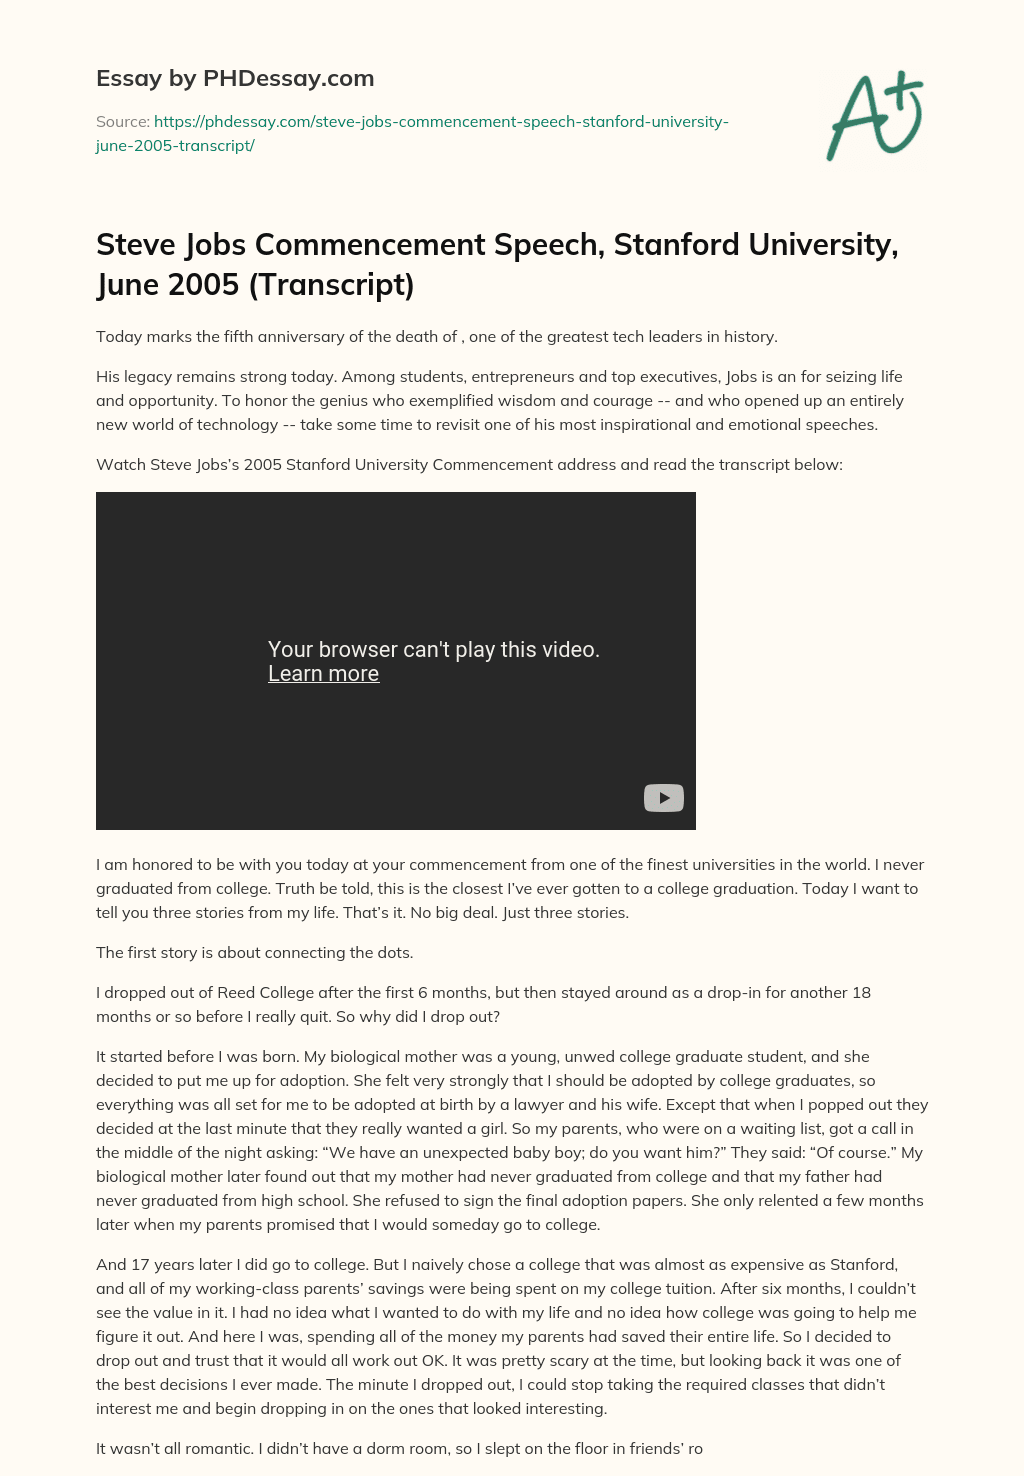 Steve Jobs Commencement Speech, Stanford University, June 2005 (Transcript) essay